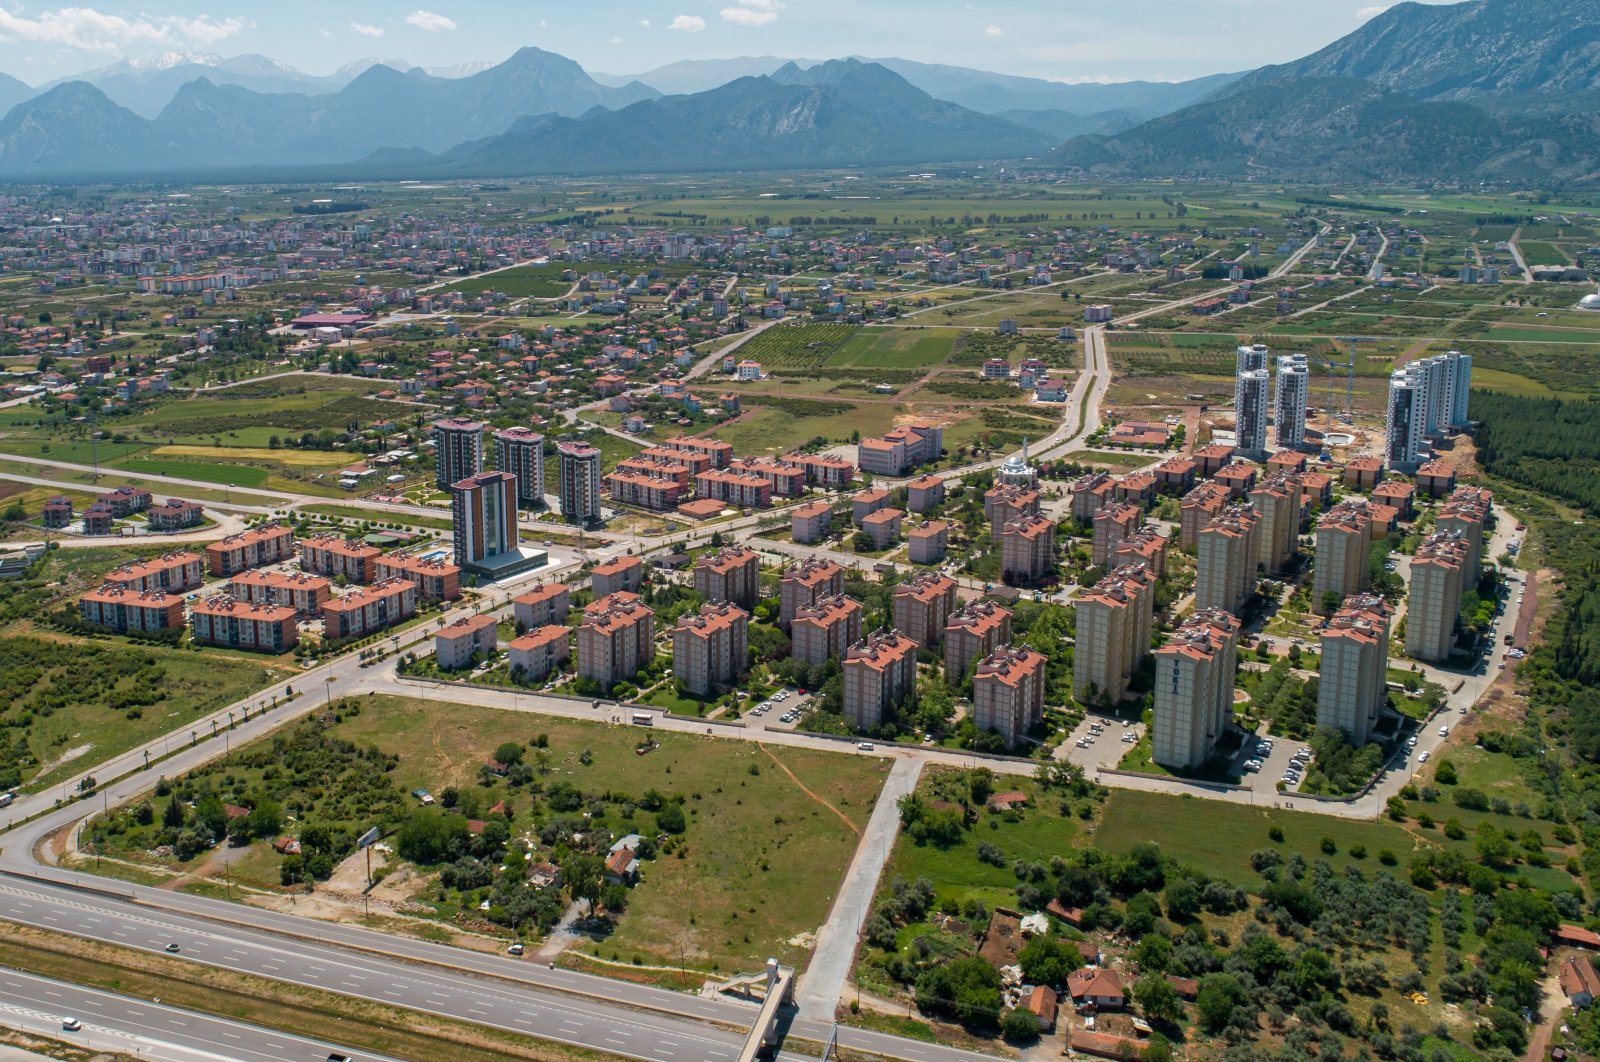 Fokus di Türkiye beralih ke peraturan untuk mengekang harga sewa rumah yang tinggi